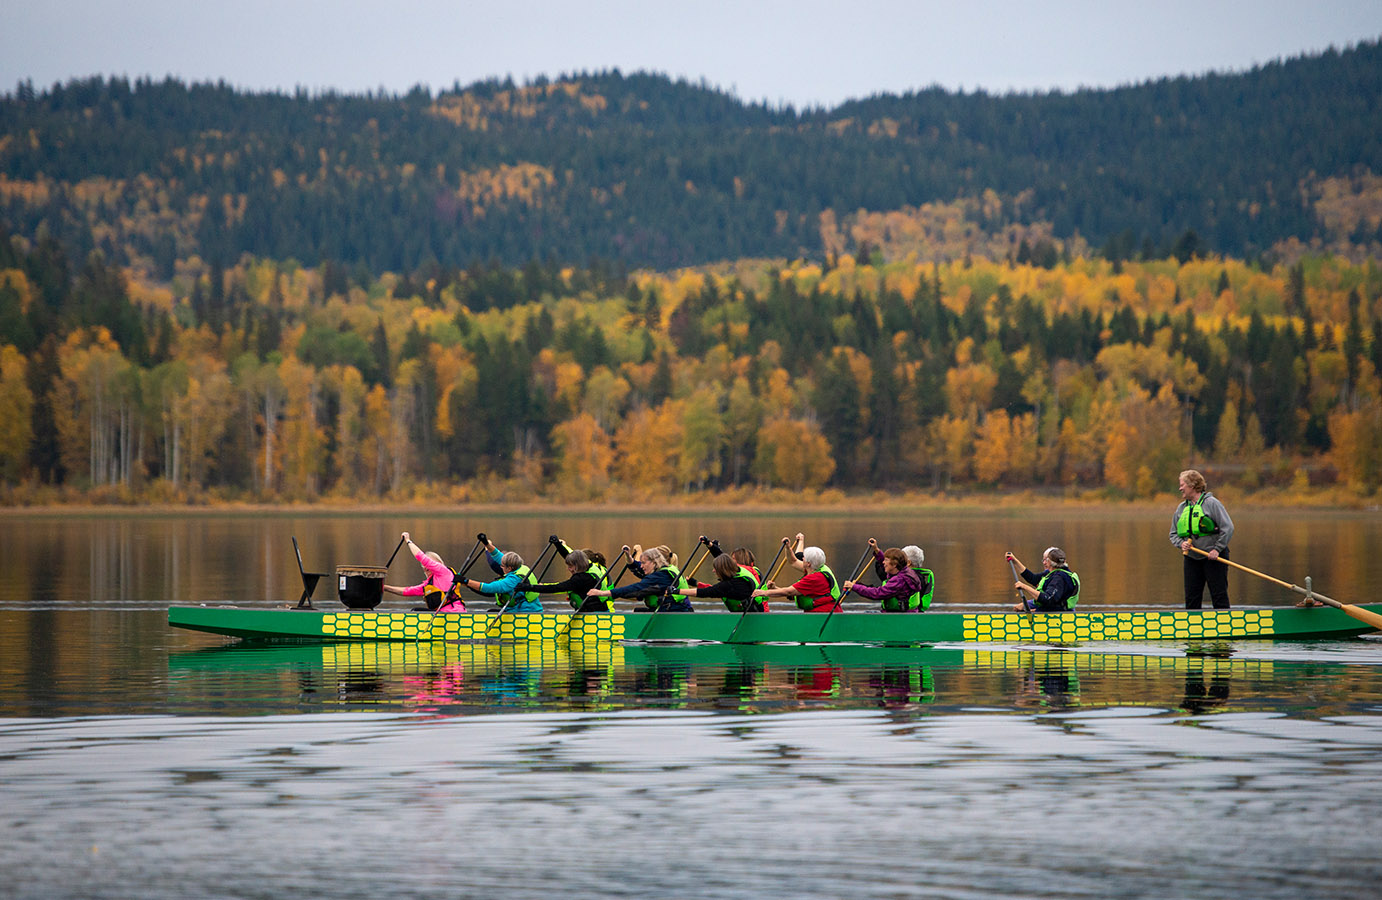 Dragon Boat Racing in Autumn